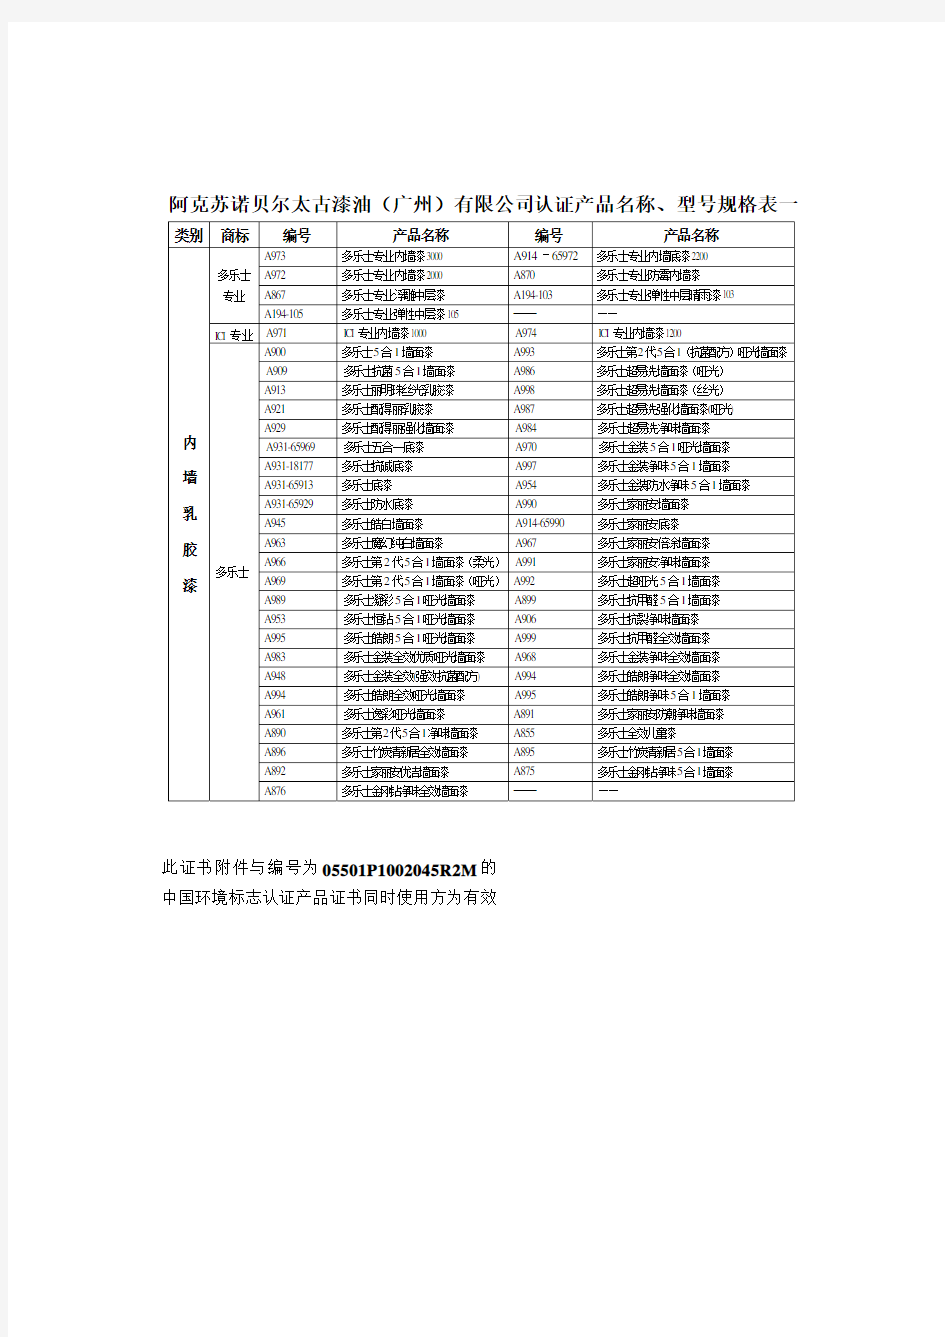 阿克苏诺贝尔太古漆油(广州)有限公司认证产品名称,型号规格表一